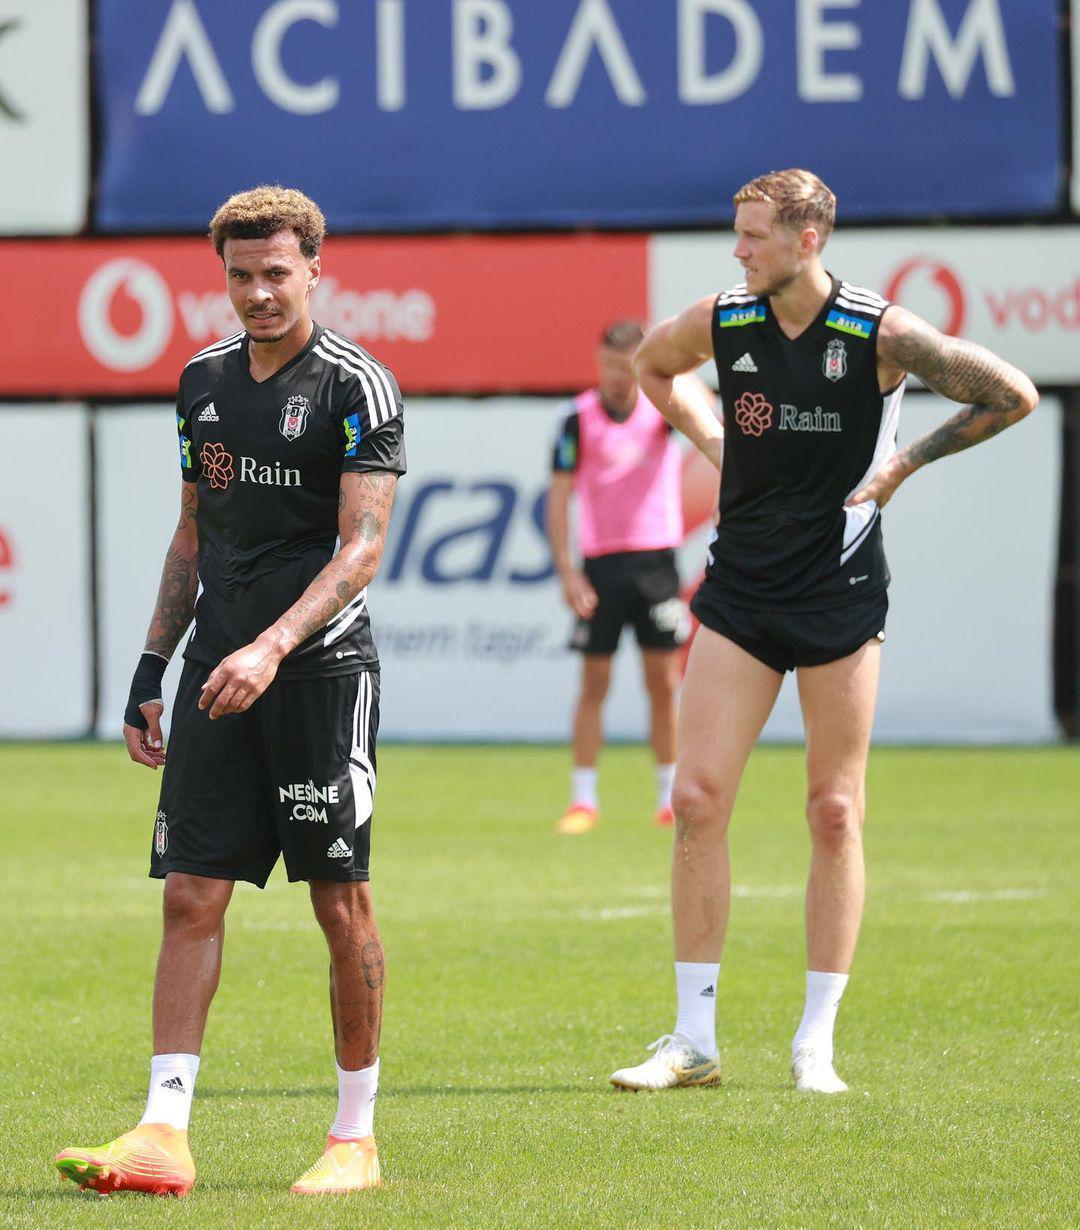 Beşiktaş transferde gözünü Fenerbahçeli yıldıza dikti, yönetim harekete geçti